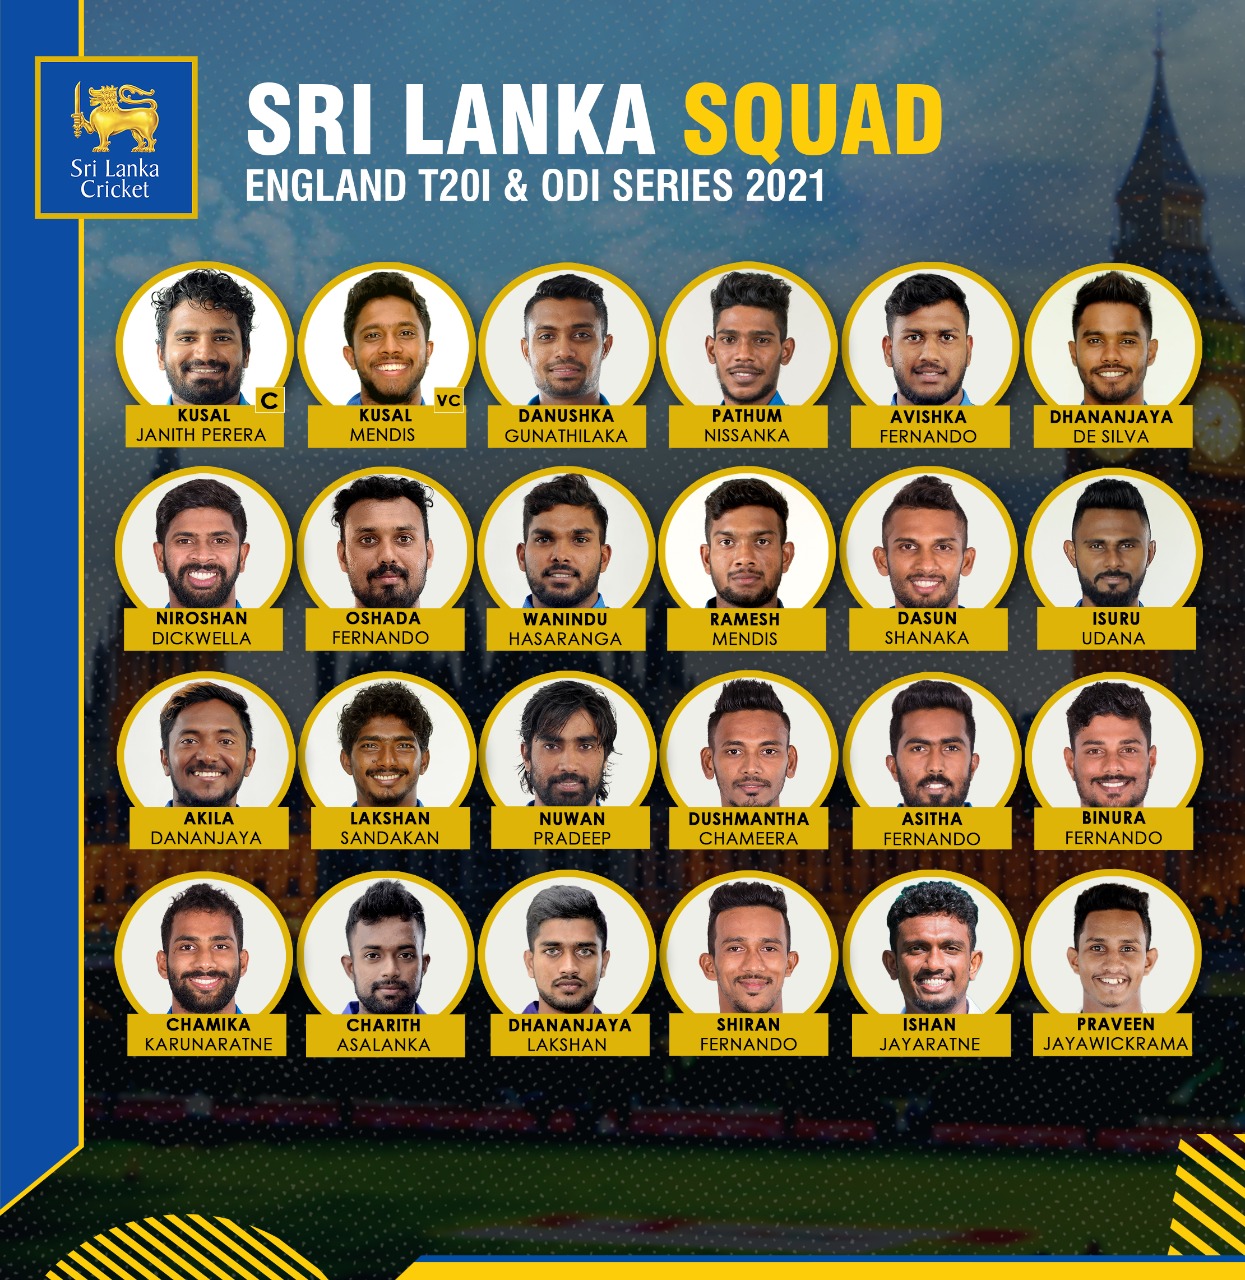 Sri Lanka squad for England T20I and ODI series